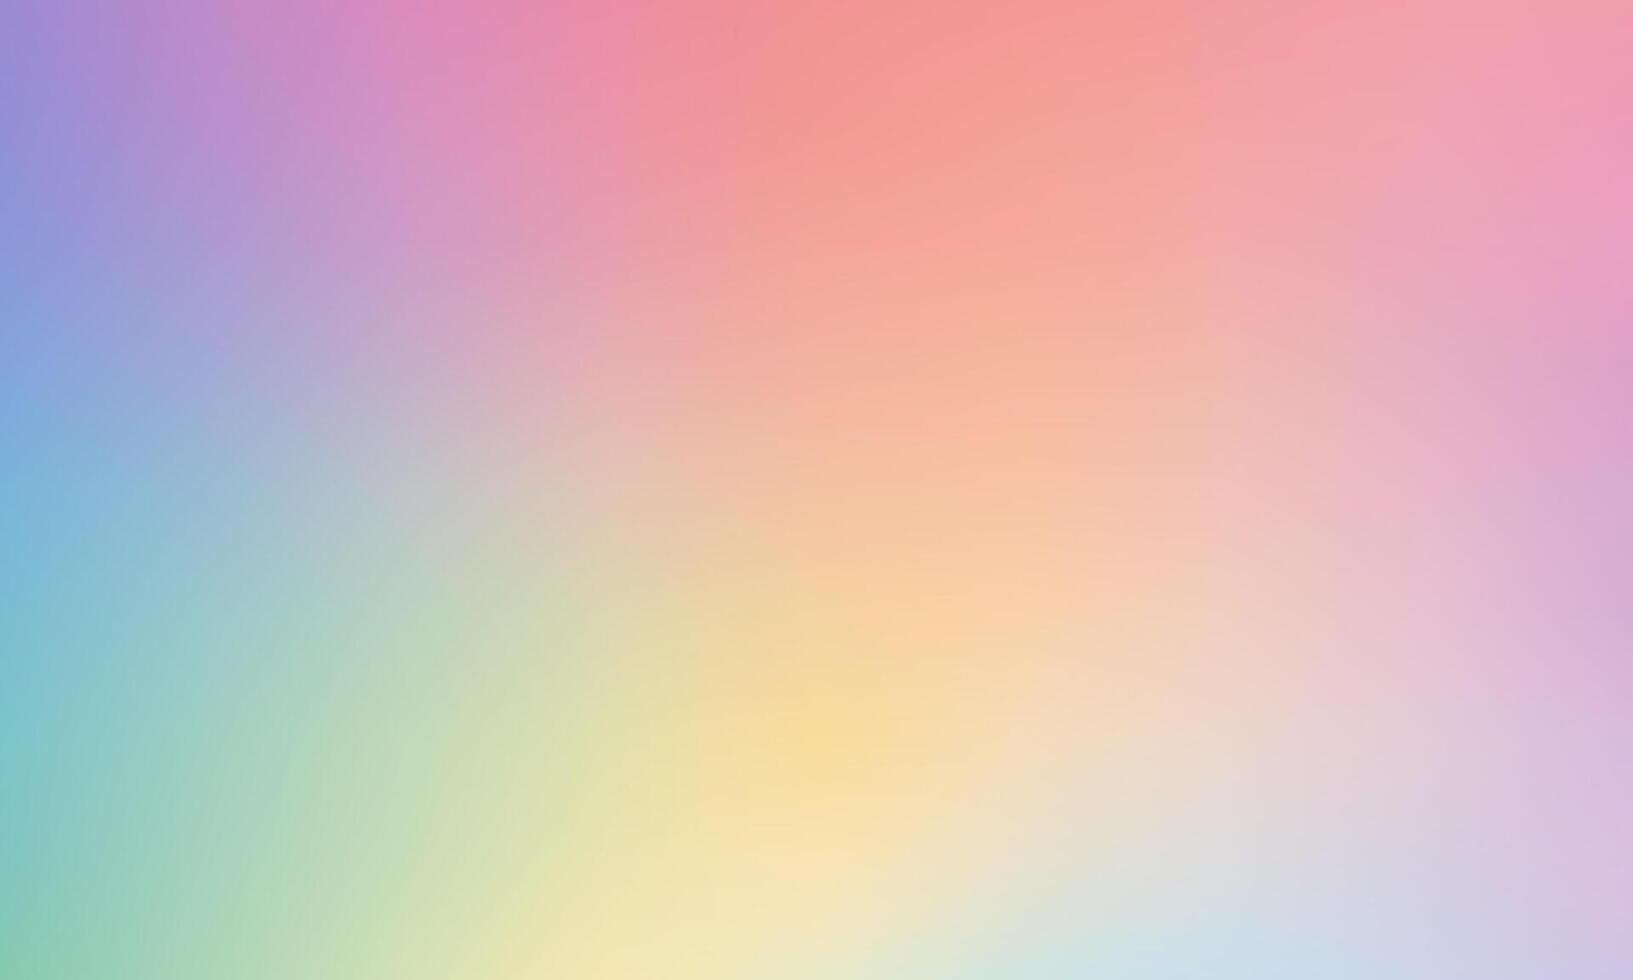 abstrakt Gradient Hintergrund mit Regenbogen Farben vektor